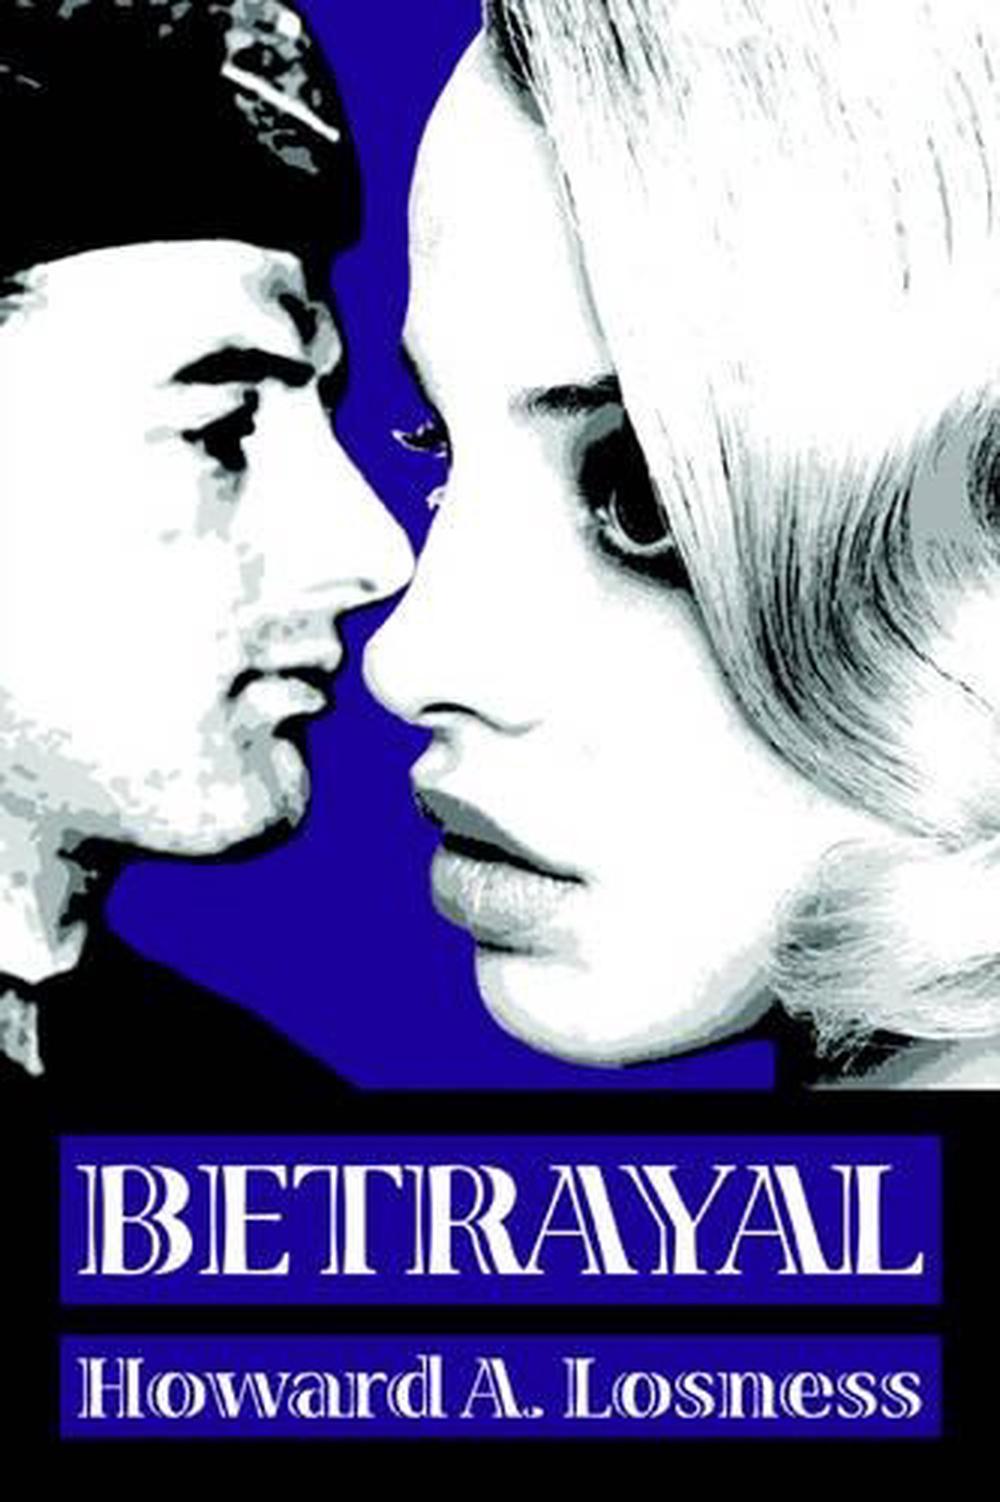 Betrayal by R.L. Stine